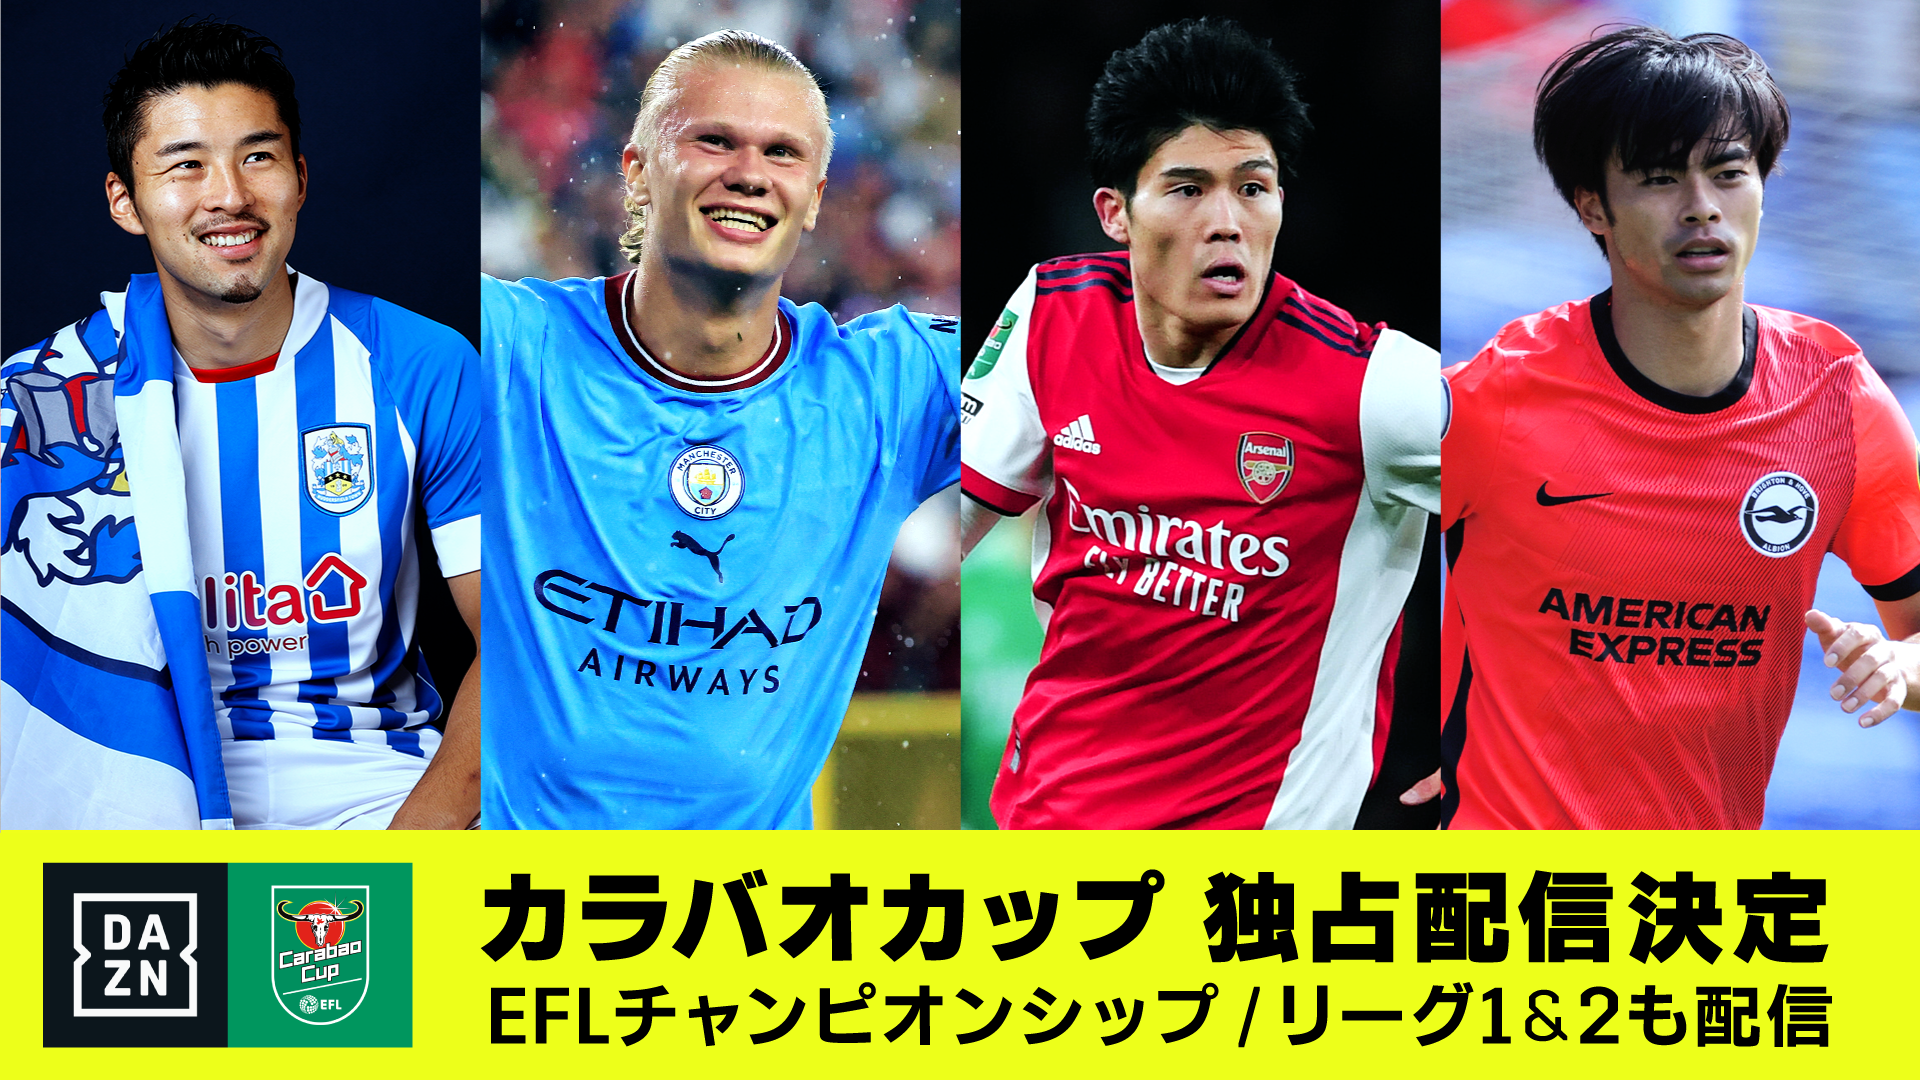 Dazn カラバオカップ チャンピオンシップの独占配信を発表 Goal Com 日本